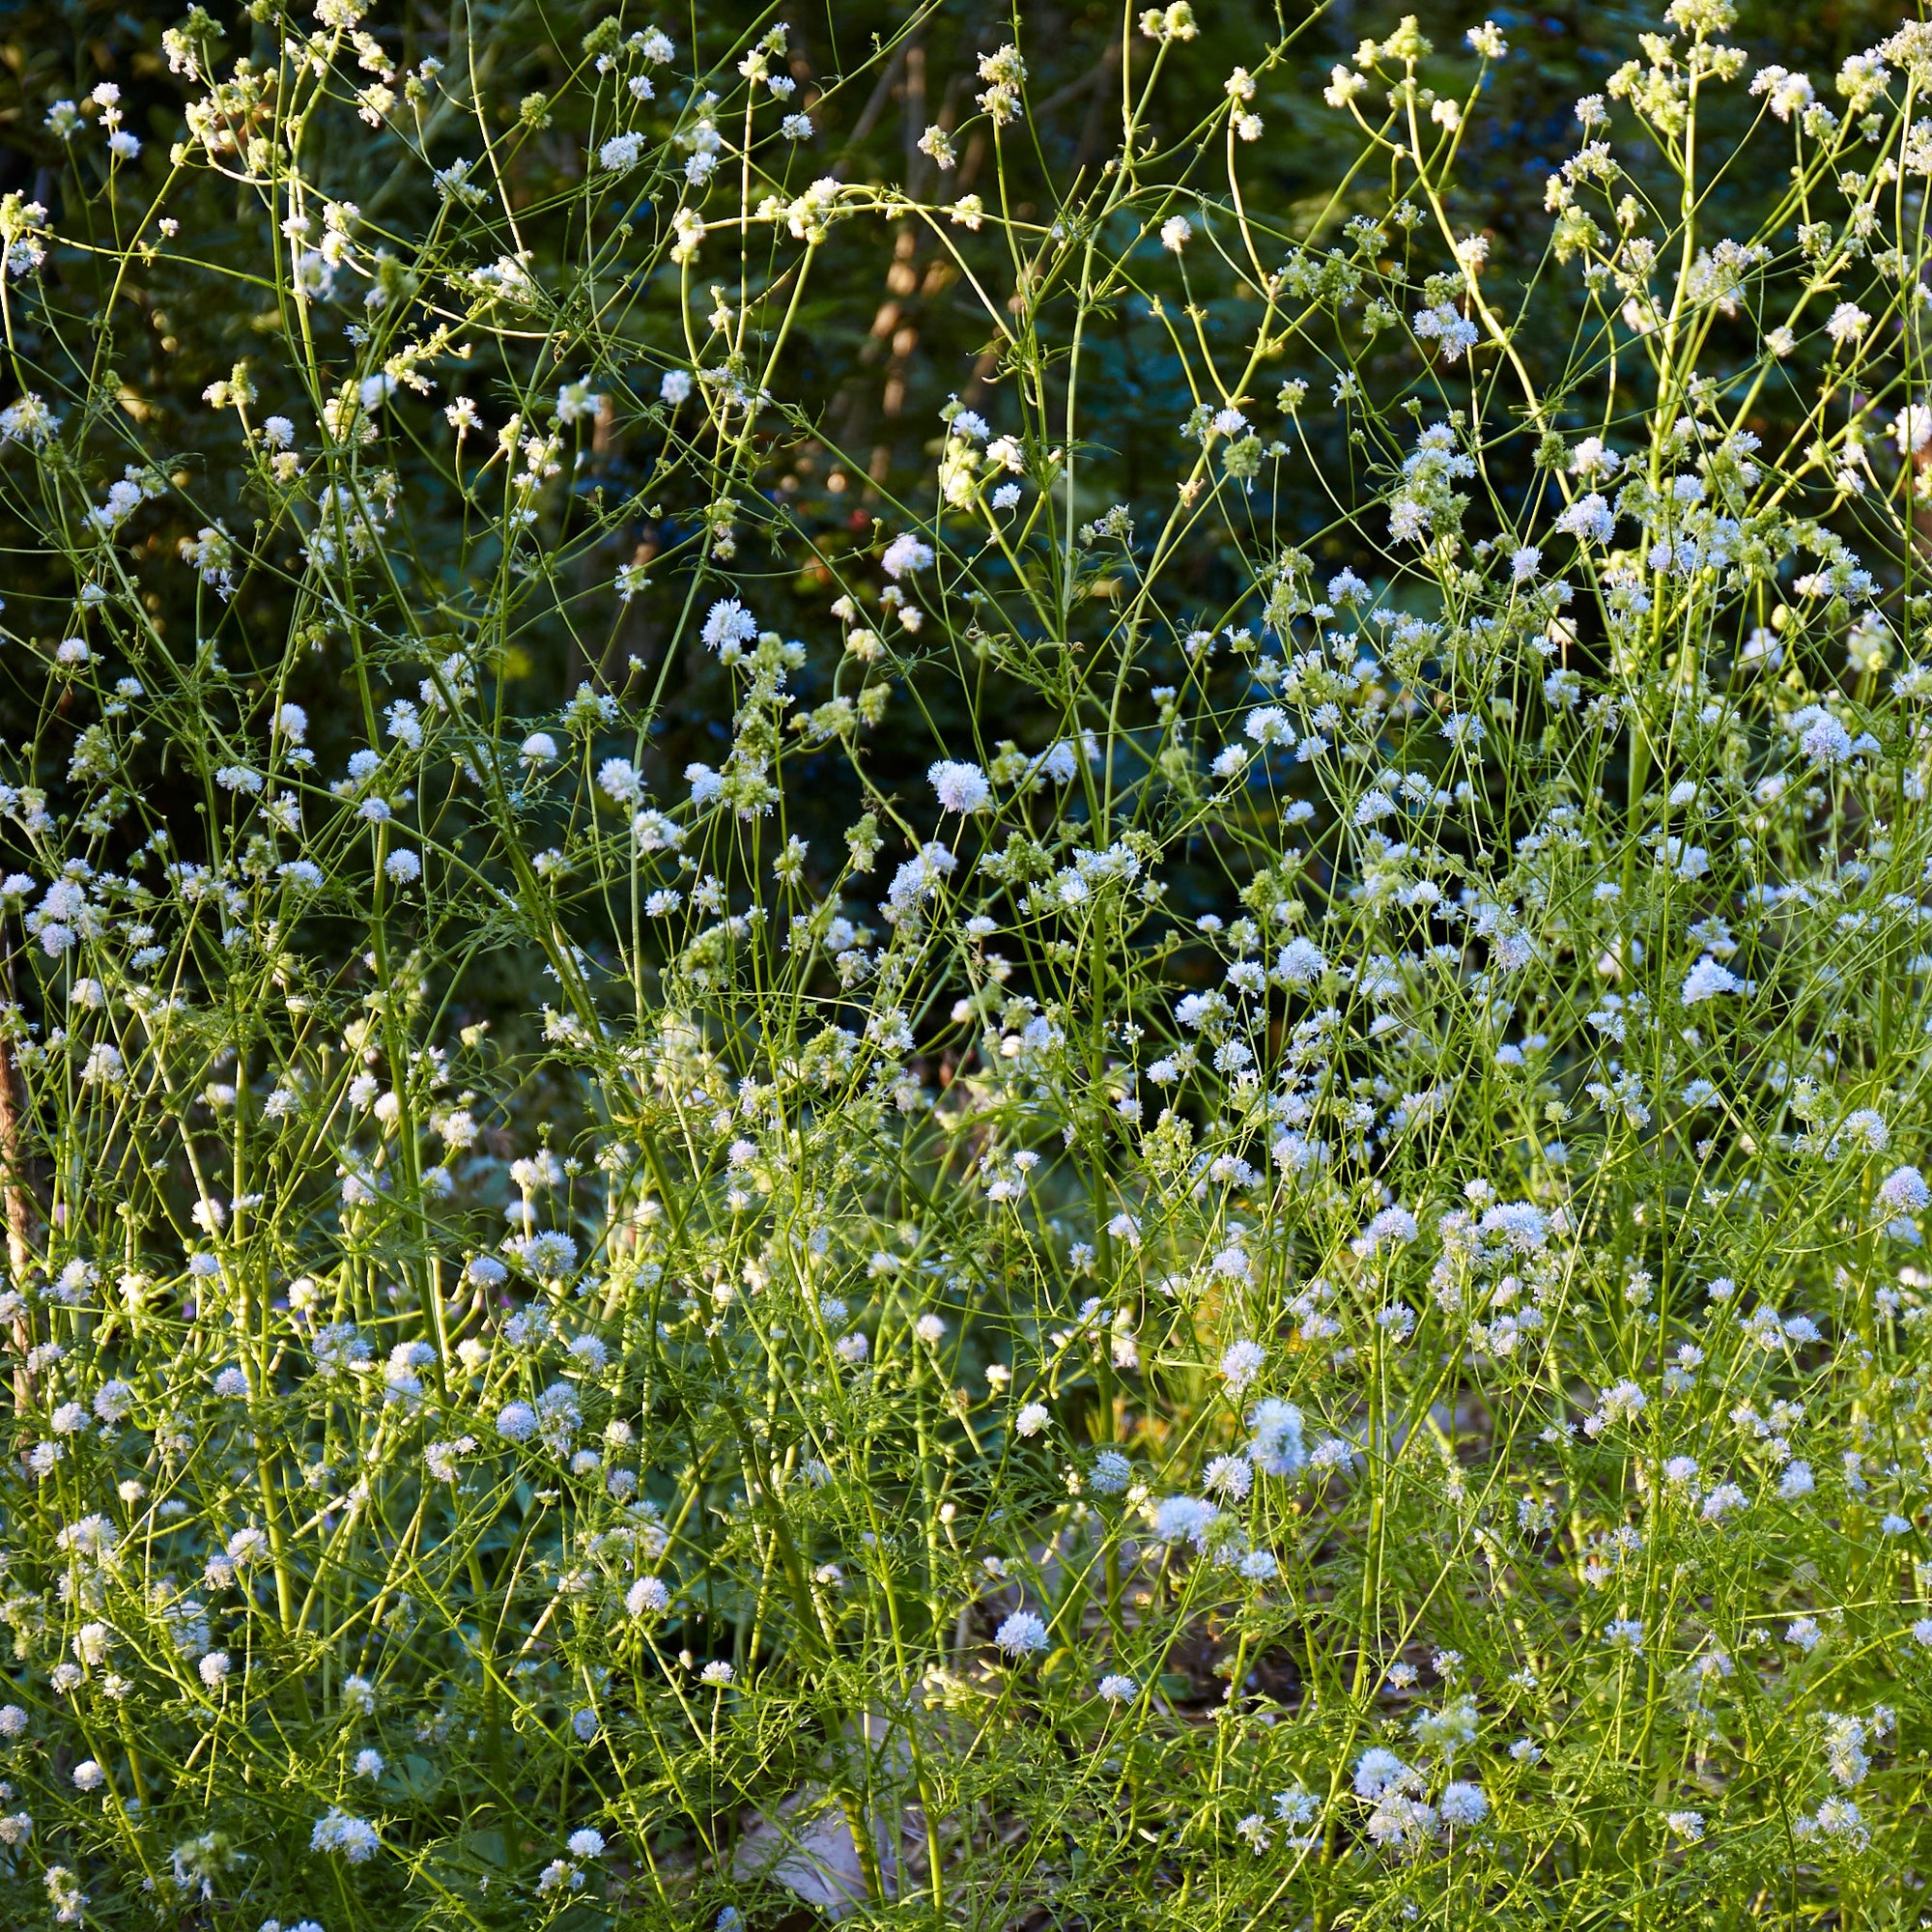 Gilia capatata (Blue Field Gilia)